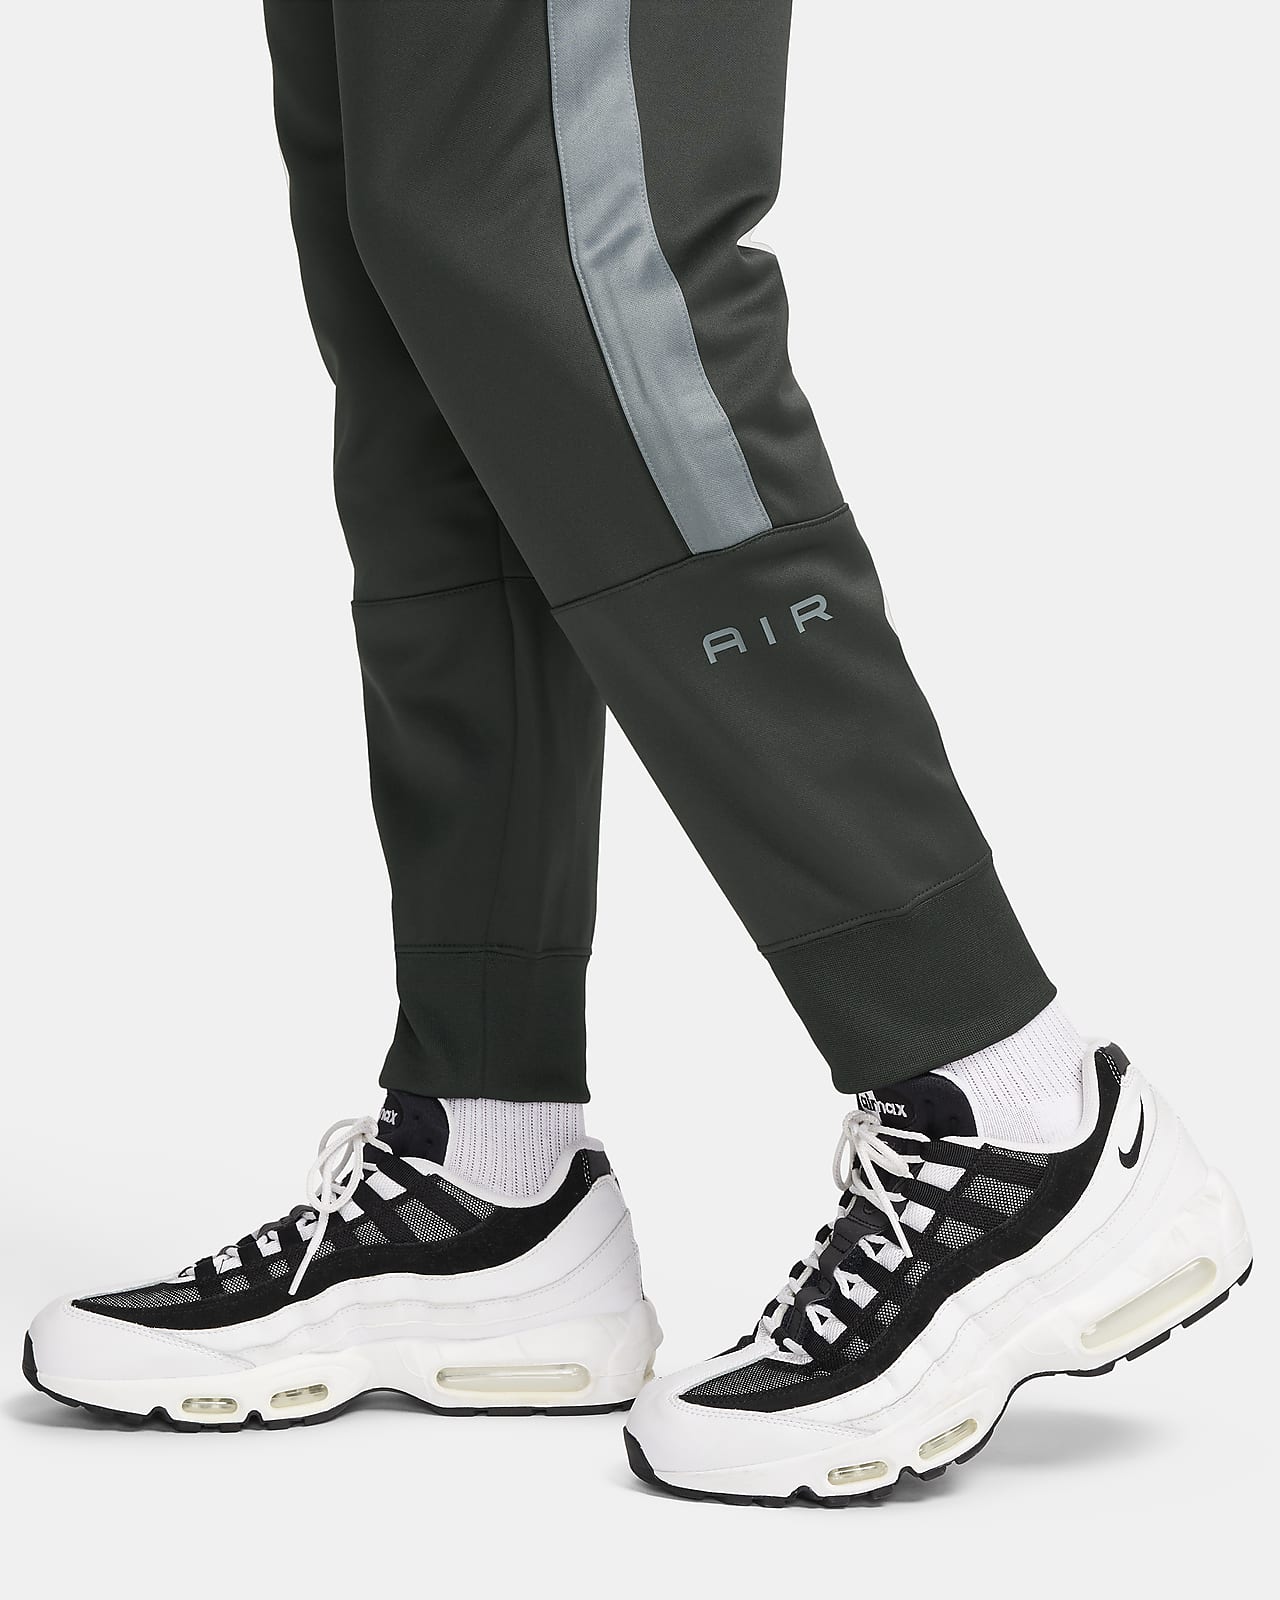 Pantalons de survêtement & joggings pour homme. Nike CA